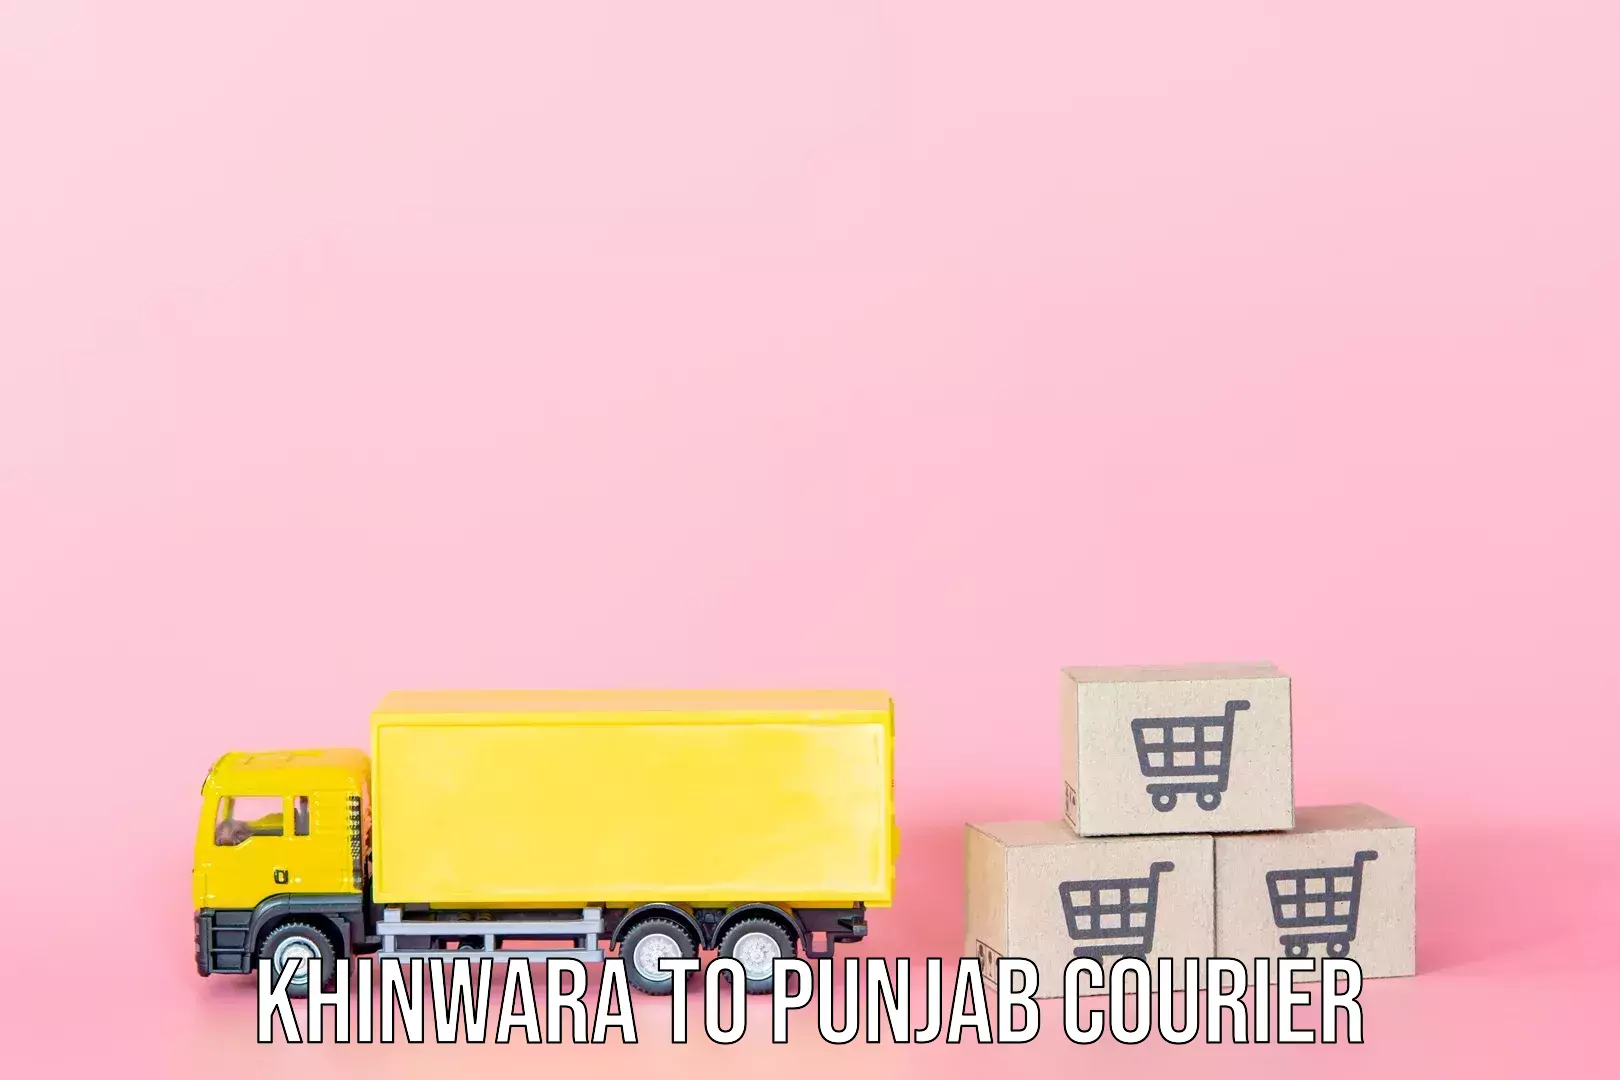 Digital baggage courier Khinwara to Punjab